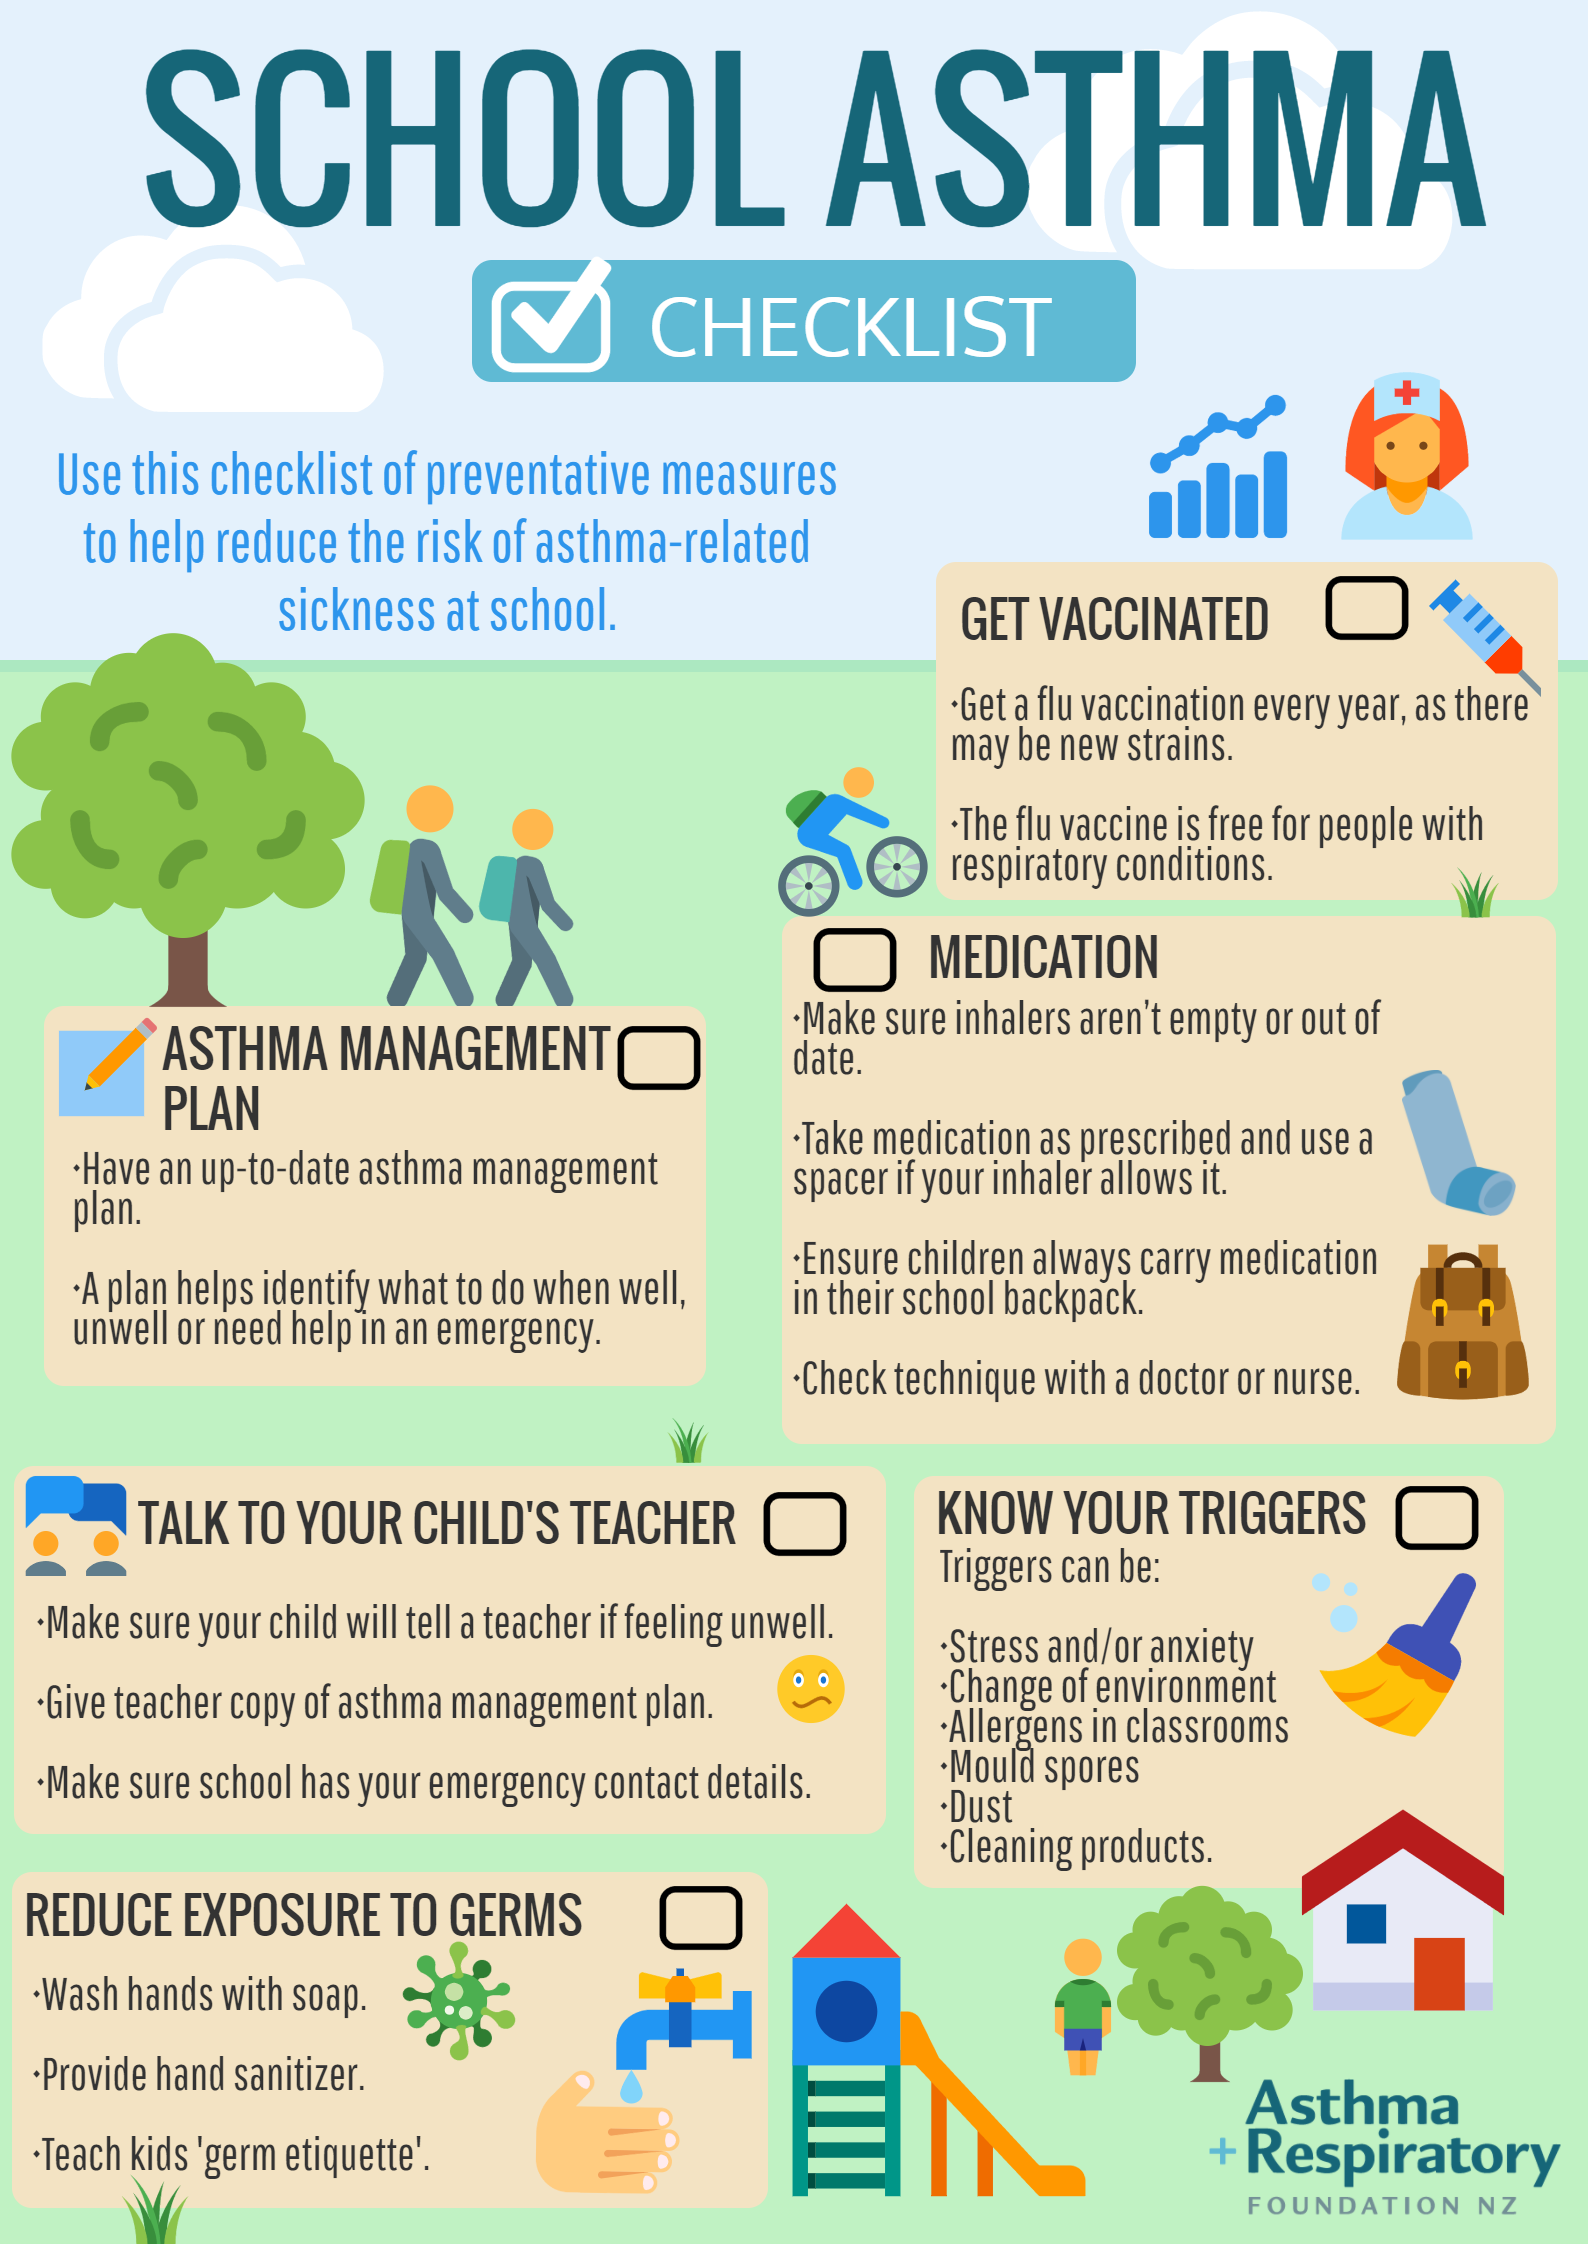 School asthma checklist